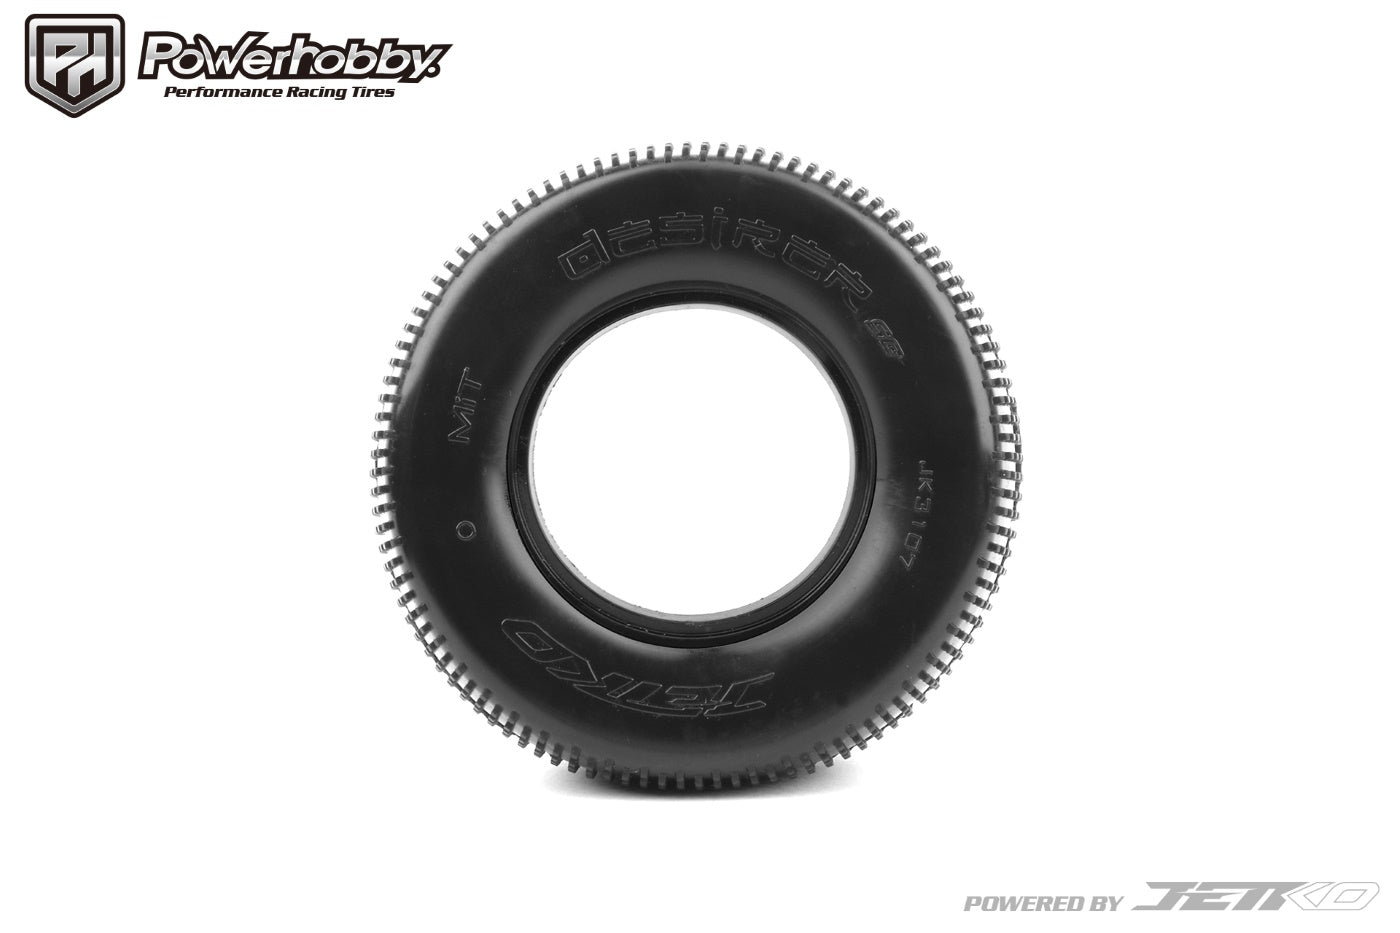 Powerhobby SC-Desirer Short Course Tires Ultra Soft.